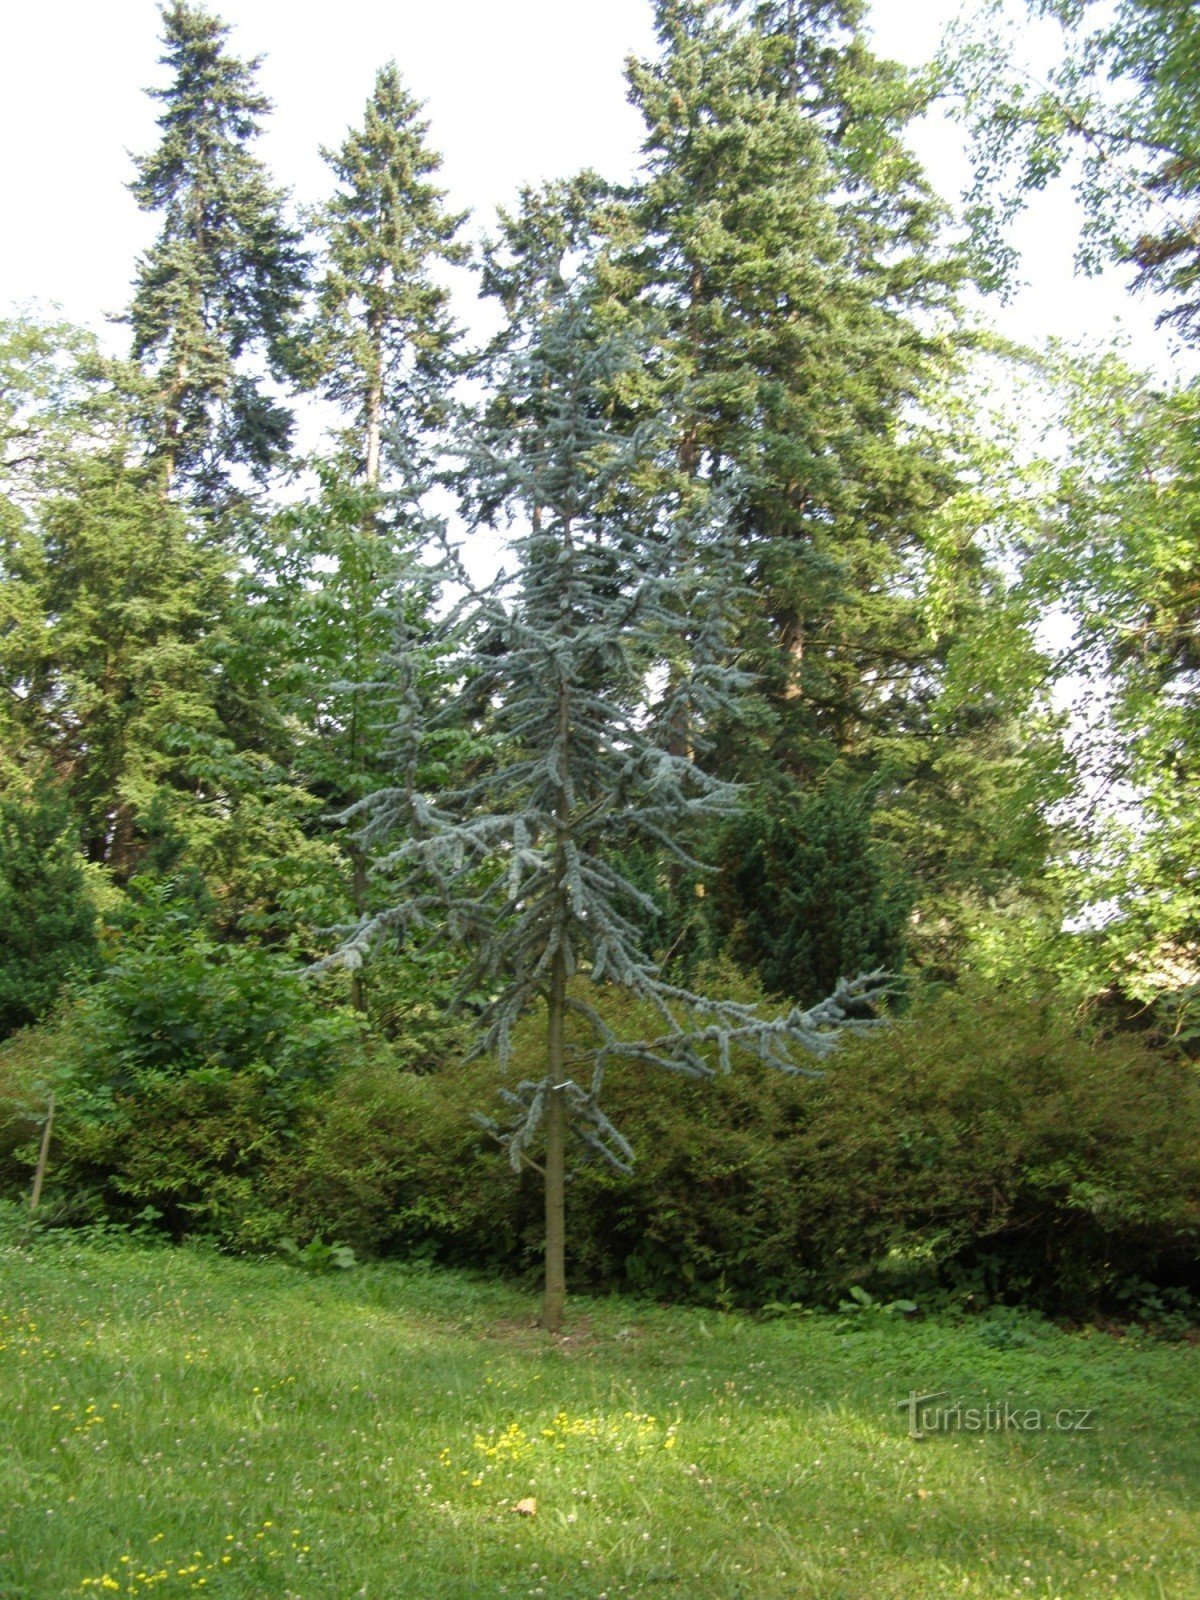 奥帕瓦附近的植物园 Nový Dvůr